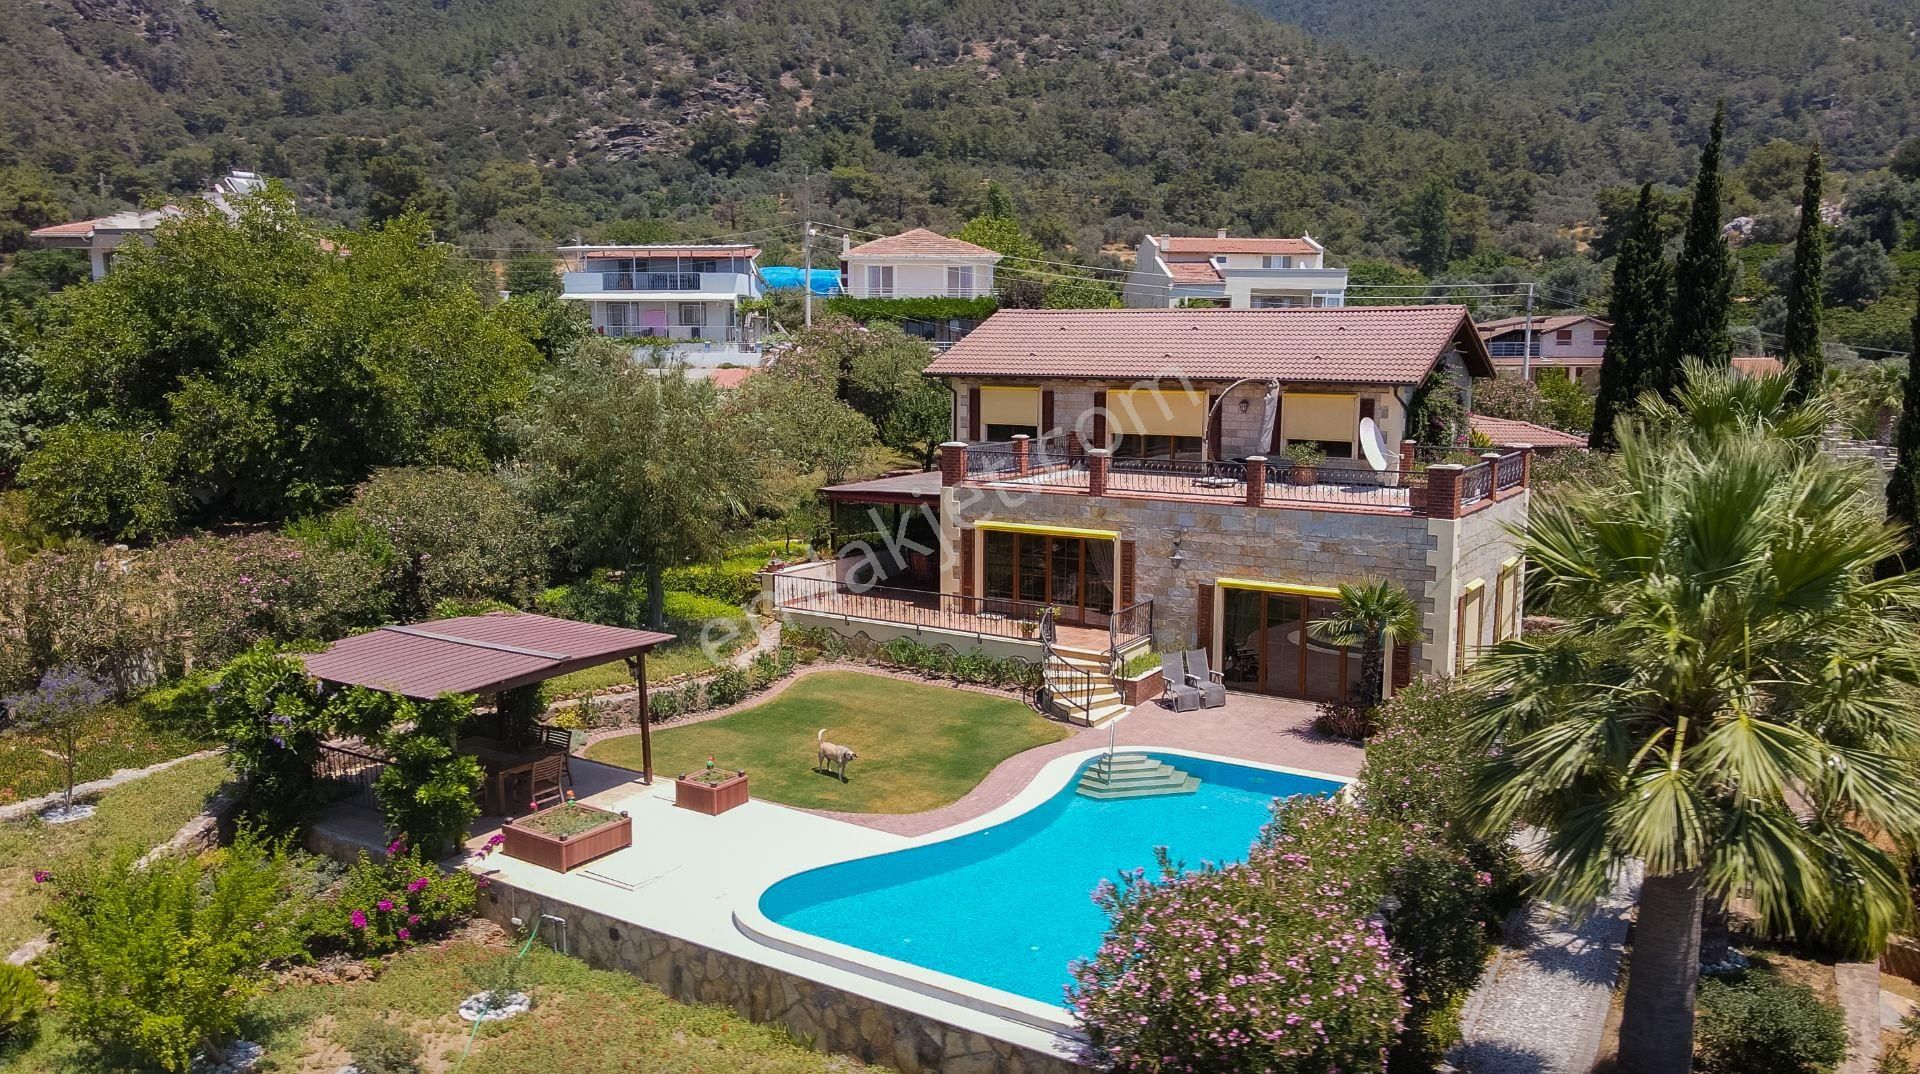 Menderes Orta Satılık Villa  İzmir Özdere'de Deniz Manzaralı ve 3200m2 Arsası olan Villa